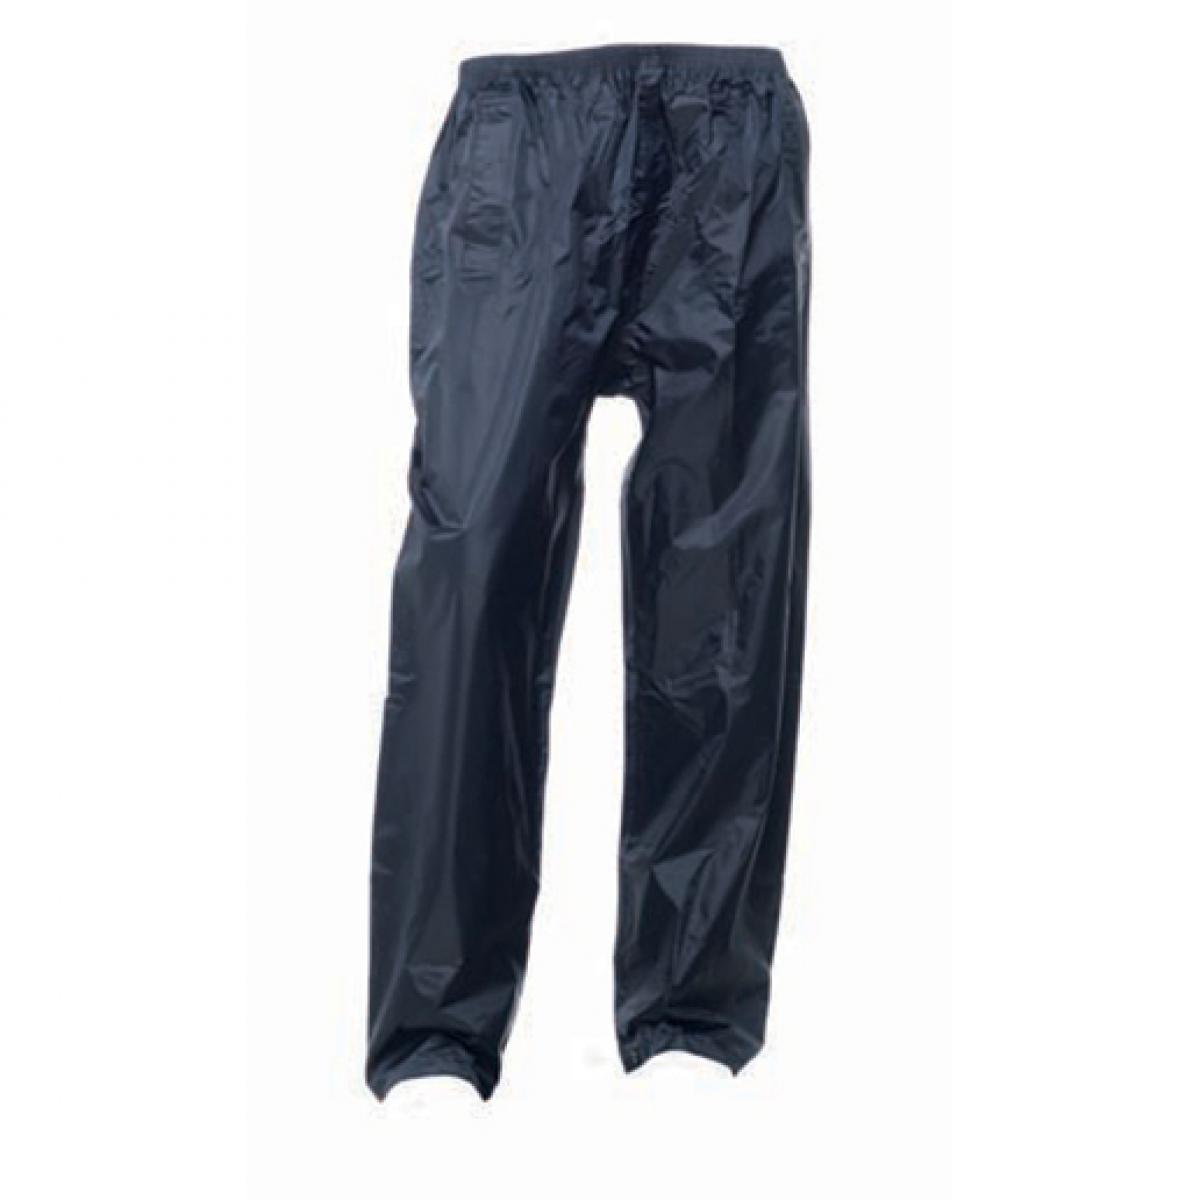 Hersteller: Regatta Herstellernummer: TRW308 Artikelbezeichnung: Pro Stormbreak Trousers / Überhose Farbe: Navy